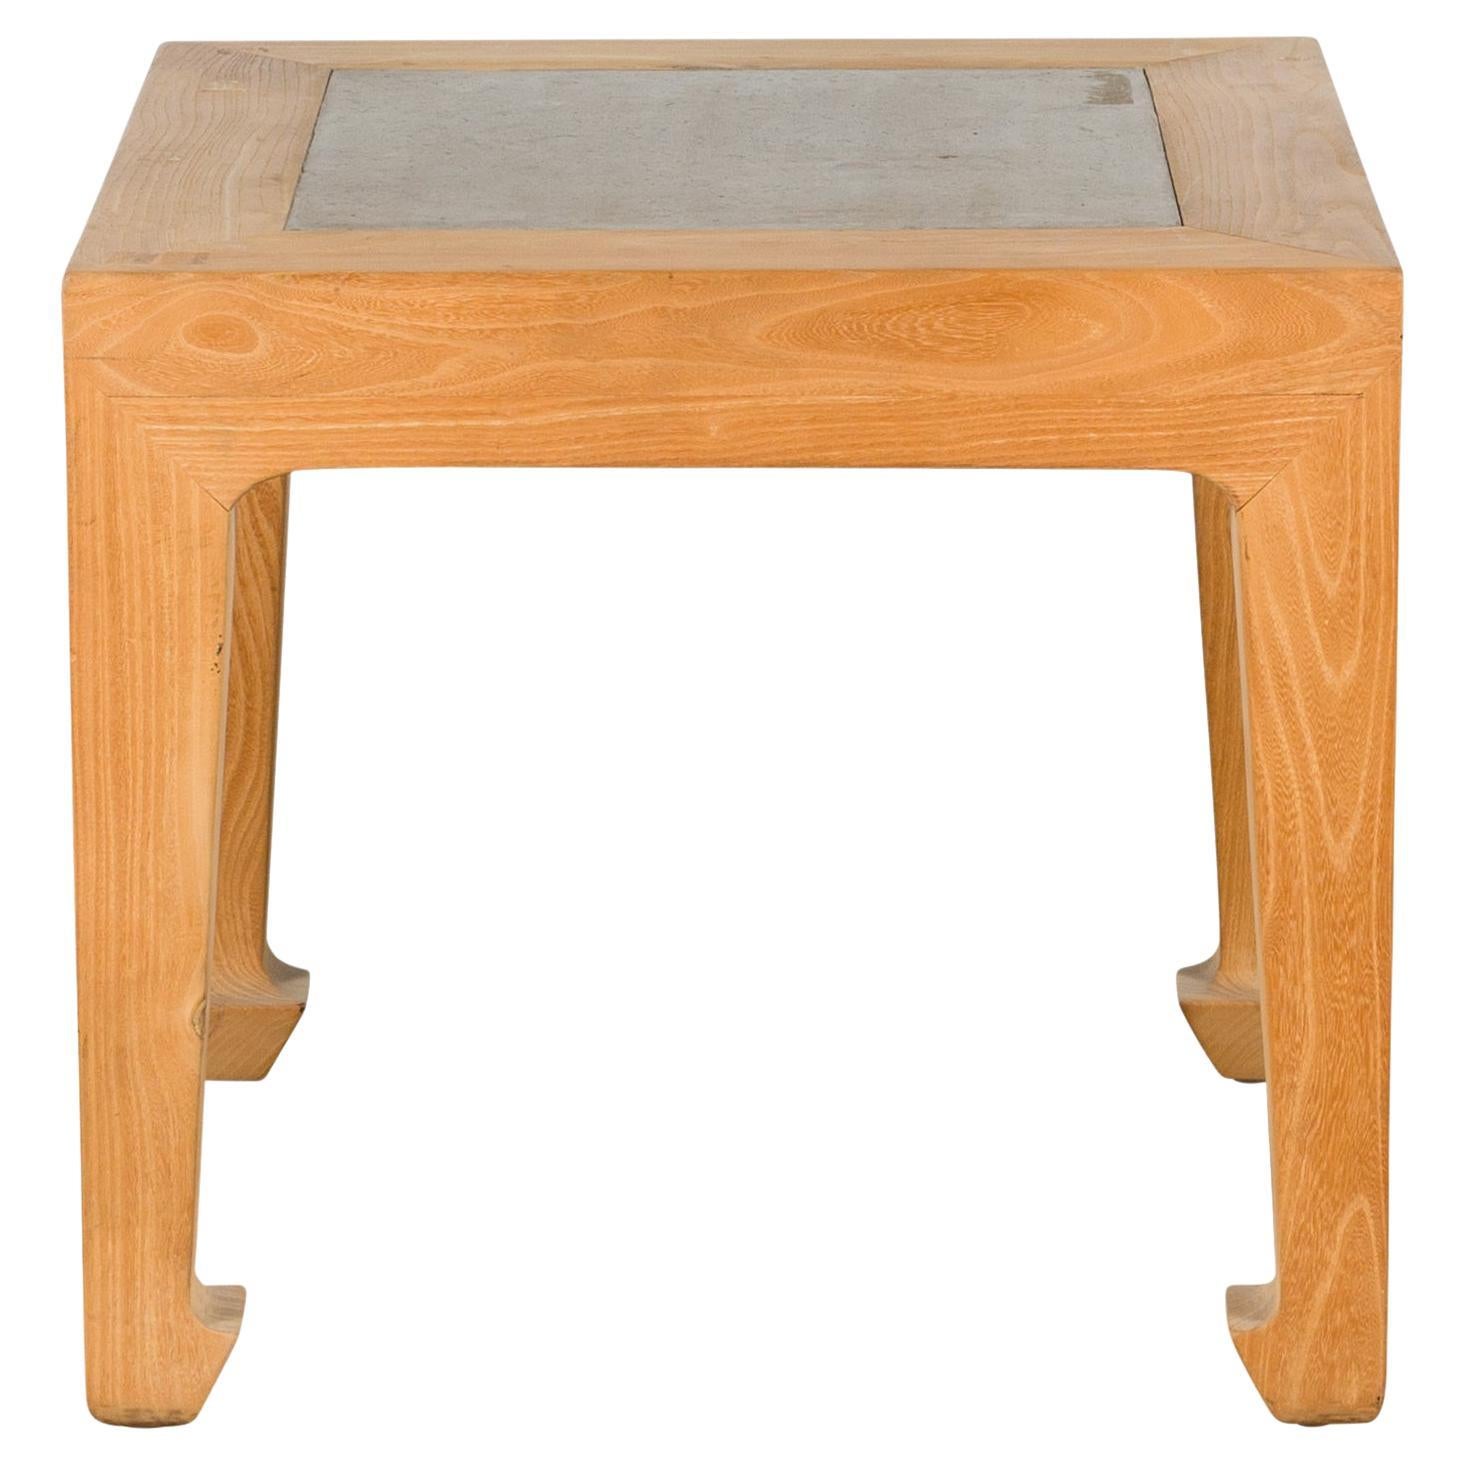 Table d'appoint chinoise carrée en bois d'orme blanchi avec plateau en carreaux de pierre insérés